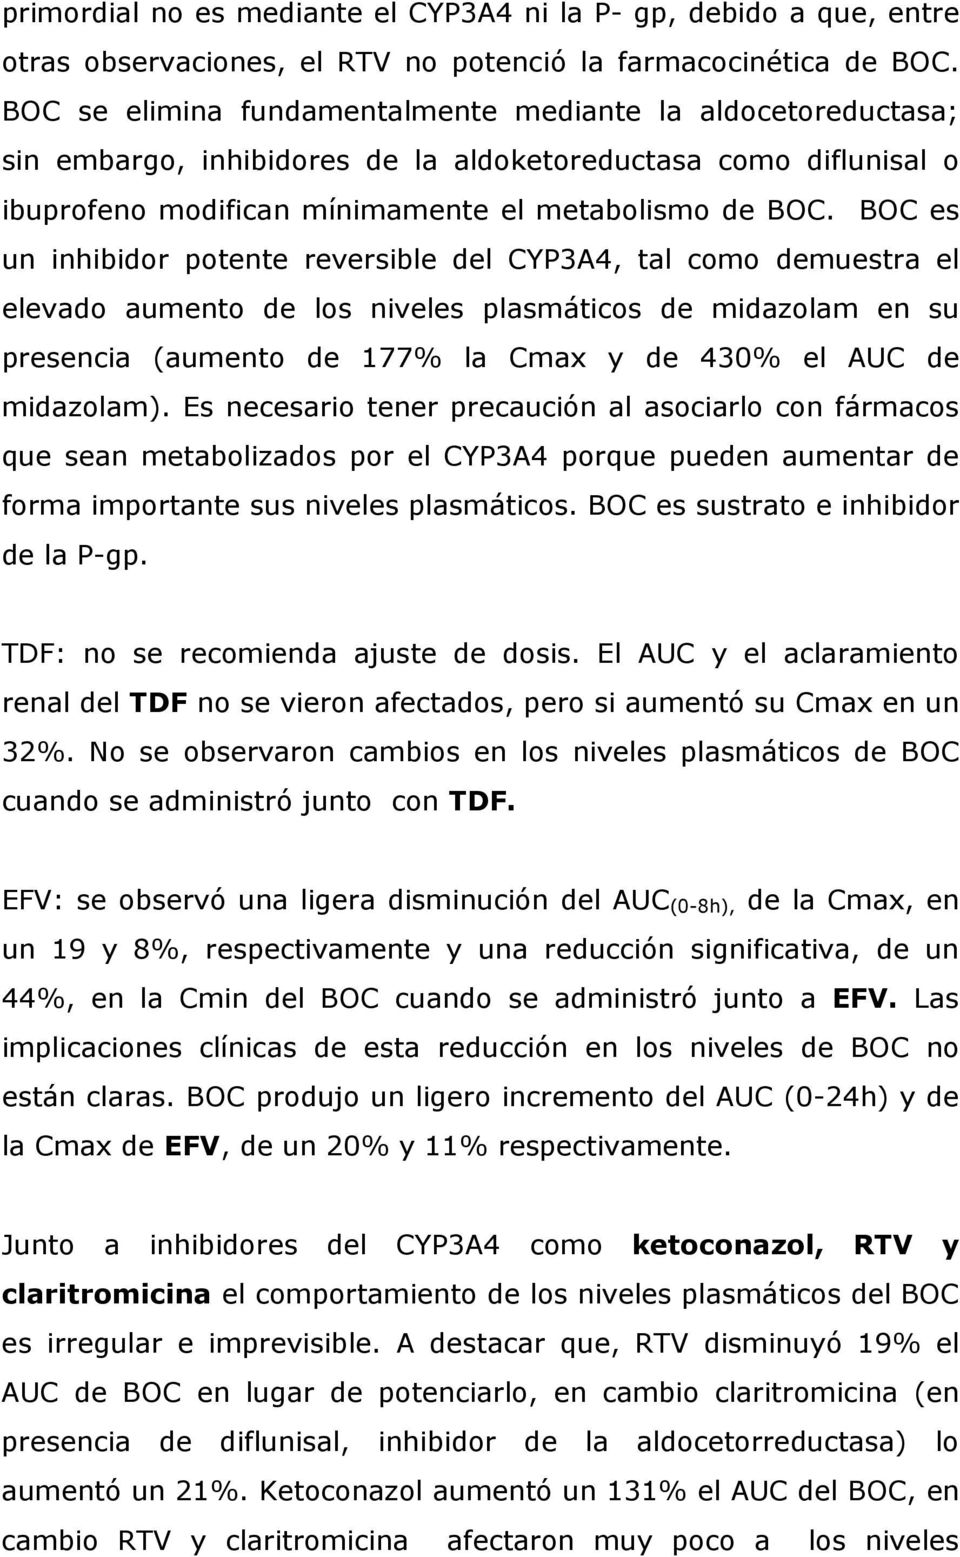 BOC es un inhibidor potente reversible del CYP3A4, tal como demuestra el elevado aumento de los niveles plasmáticos de midazolam en su presencia (aumento de 177% la Cmax y de 430% el AUC de